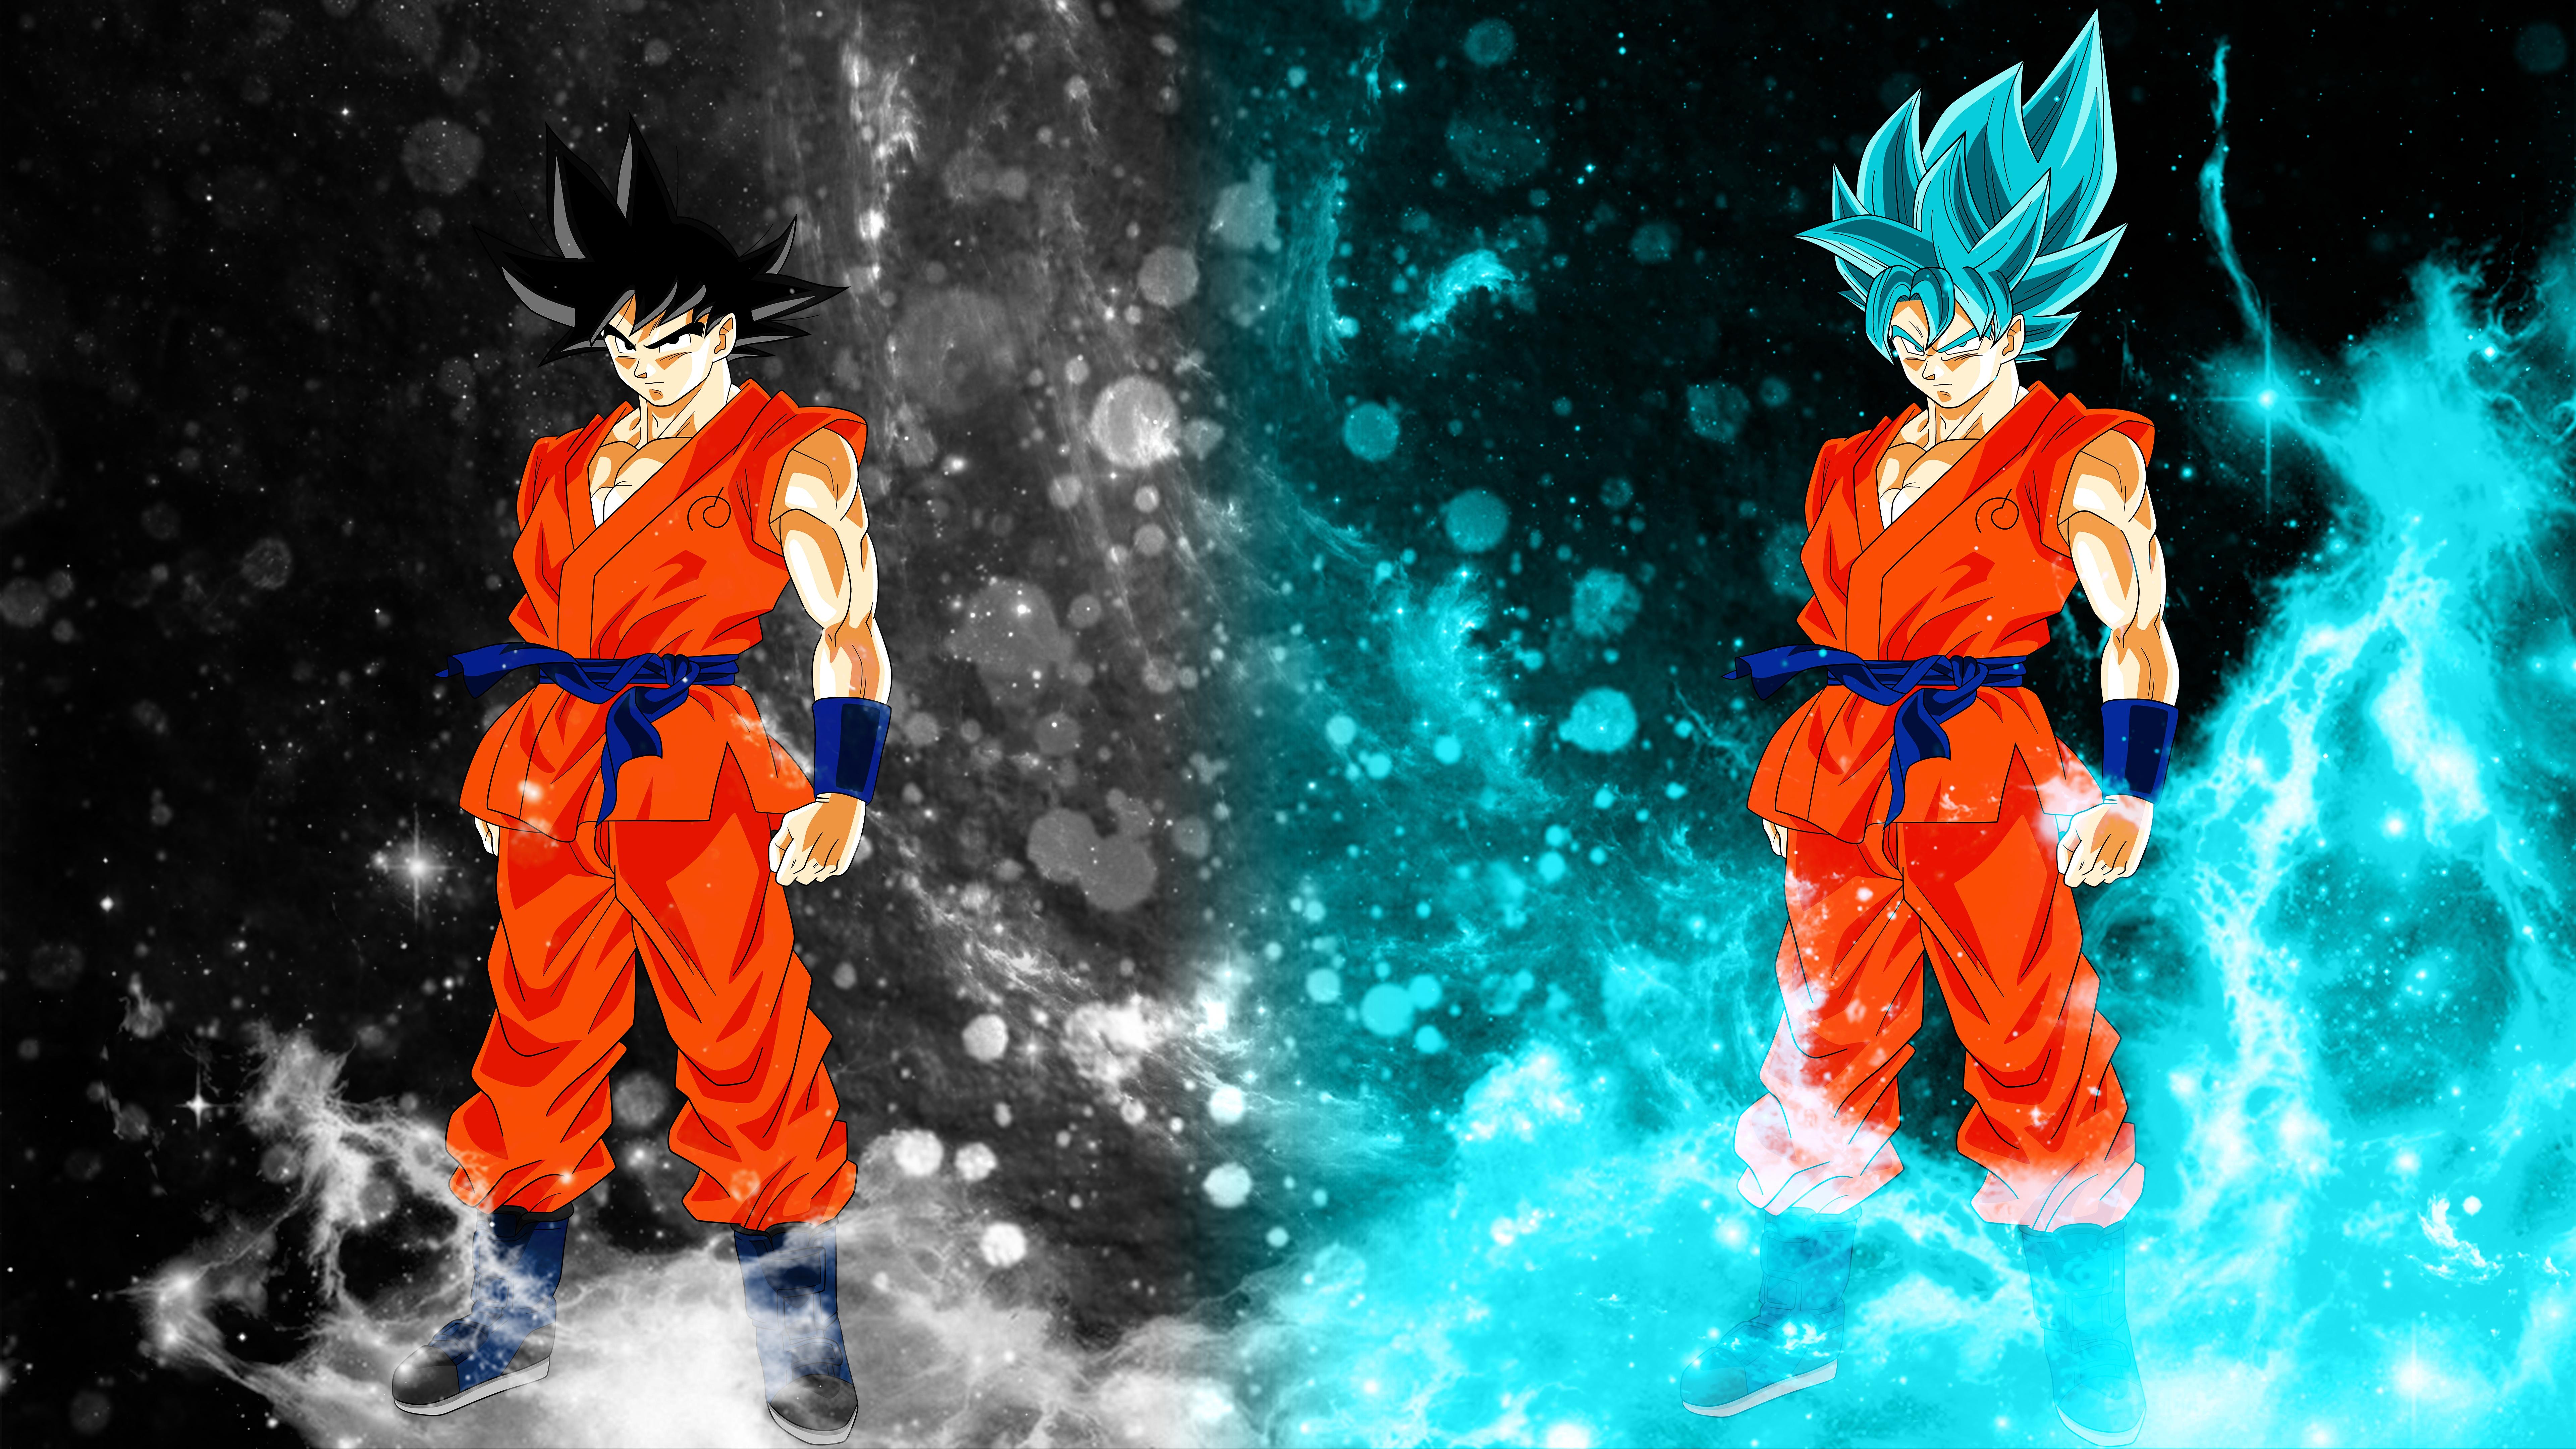 Goku Desktop Background. Naruto Goku Wallpaper, Goku vs Superman Wallpaper and Goku God Wallpaper